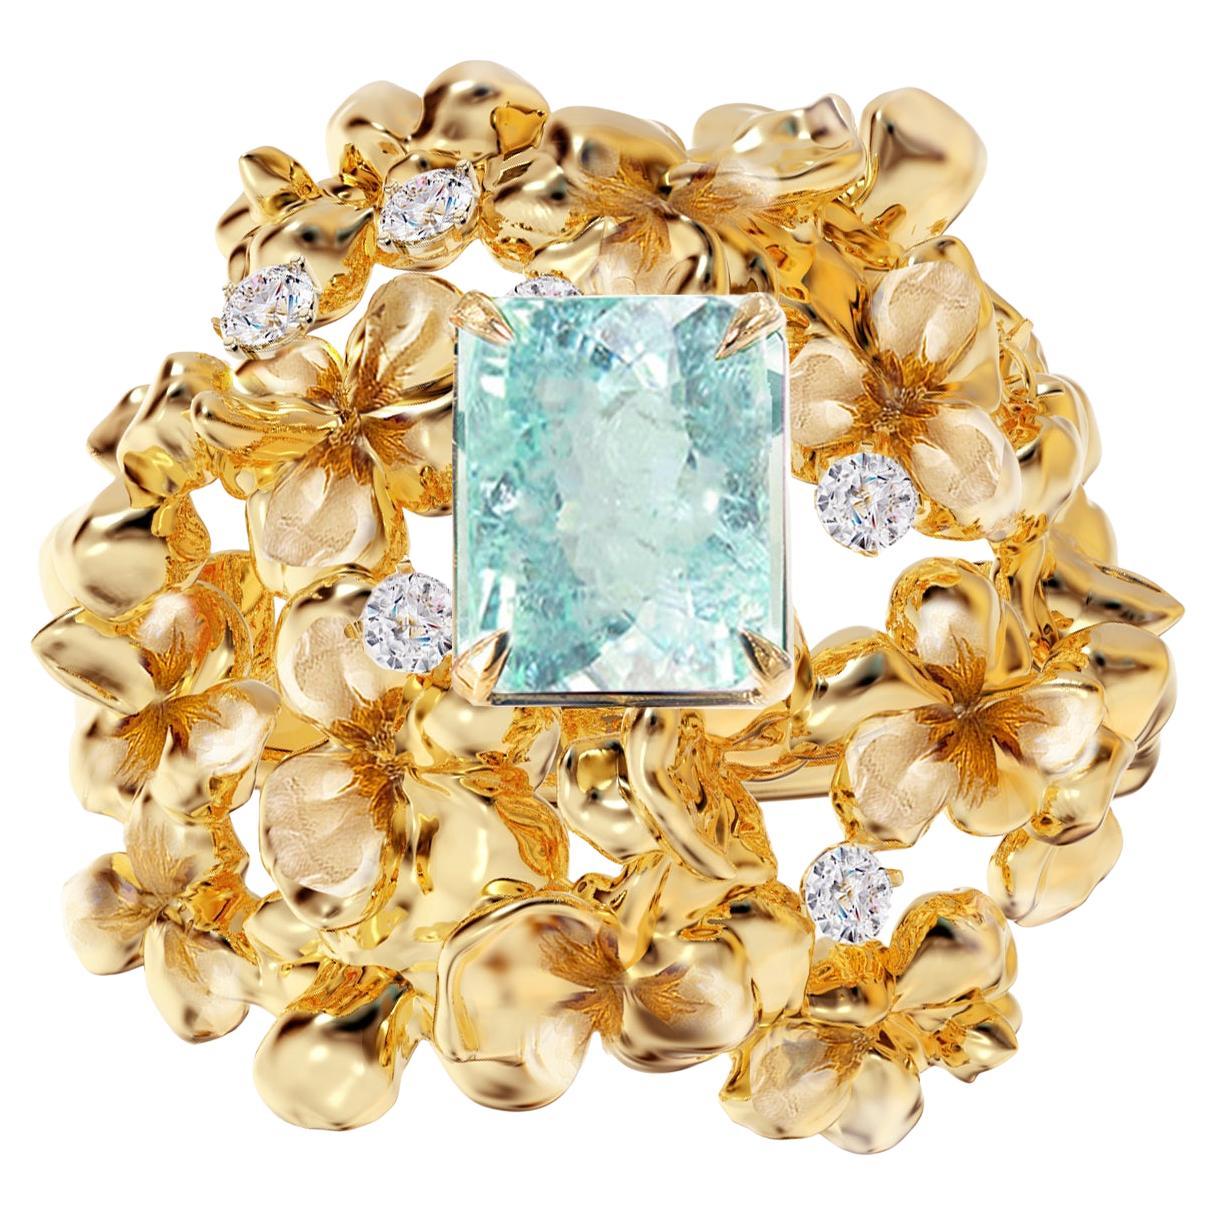 Zeitgenössischer Ring aus 18 Karat Gelbgold mit Diamanten und Paraiba-Turmalin